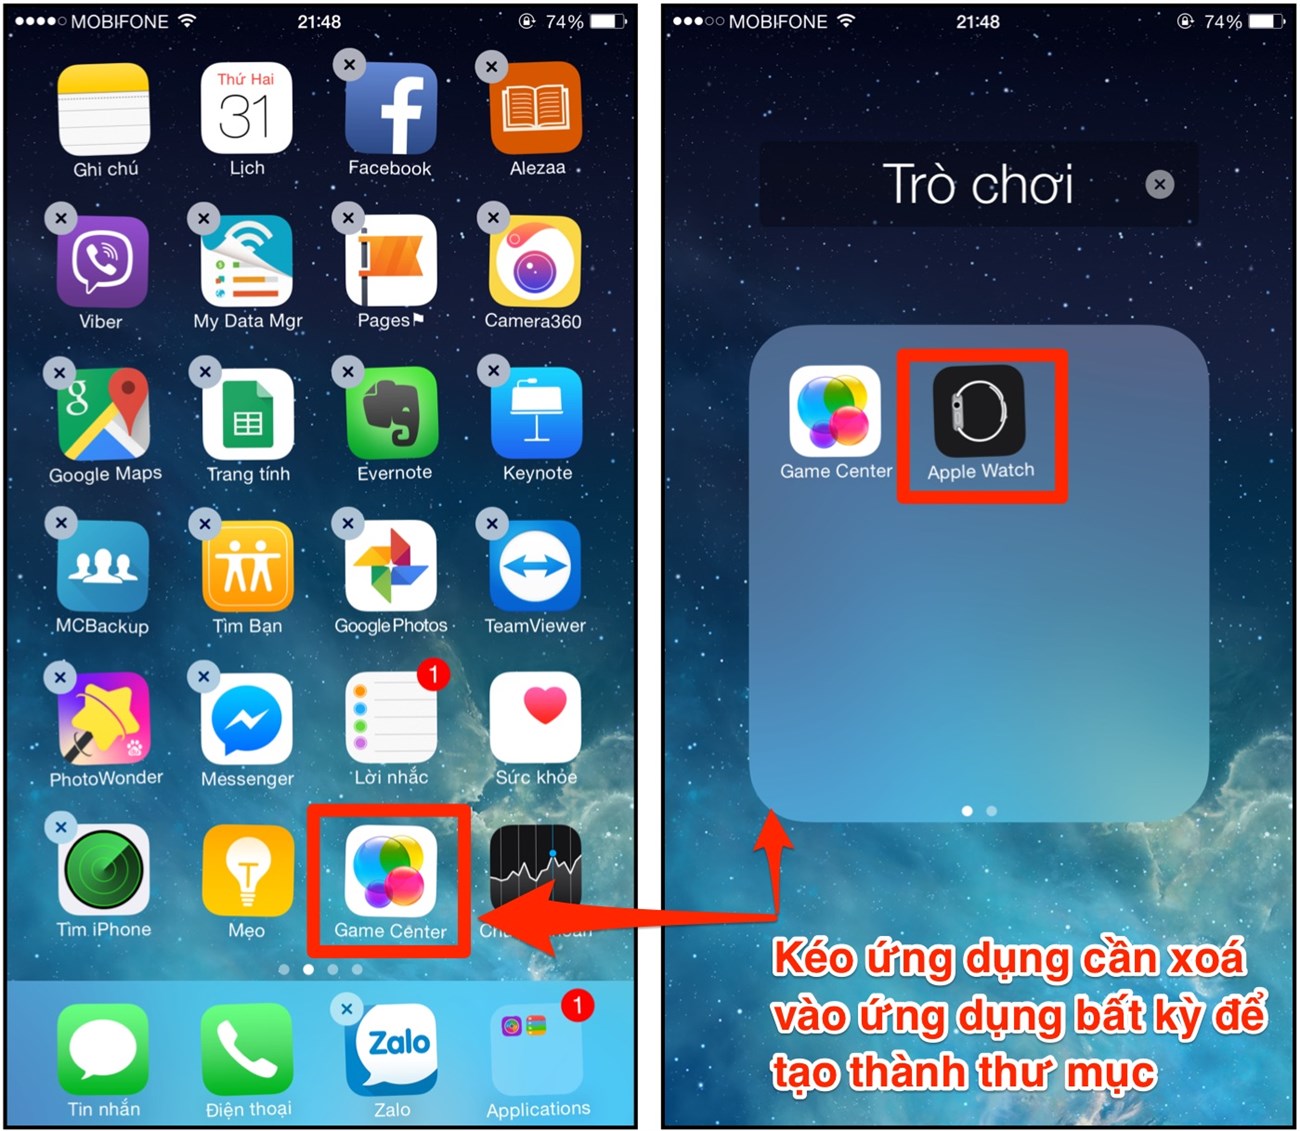 Apple đã loại bỏ biểu tượng của ứng dụng cũ giúp người dùng không còn bị rối mắt với hàng loạt biểu tượng không cần thiết trên màn hình. Hãy xem hình ảnh để khám phá những tính năng mới và mang đến một trải nghiệm sạch sẽ và dễ dàng hơn khi sử dụng.